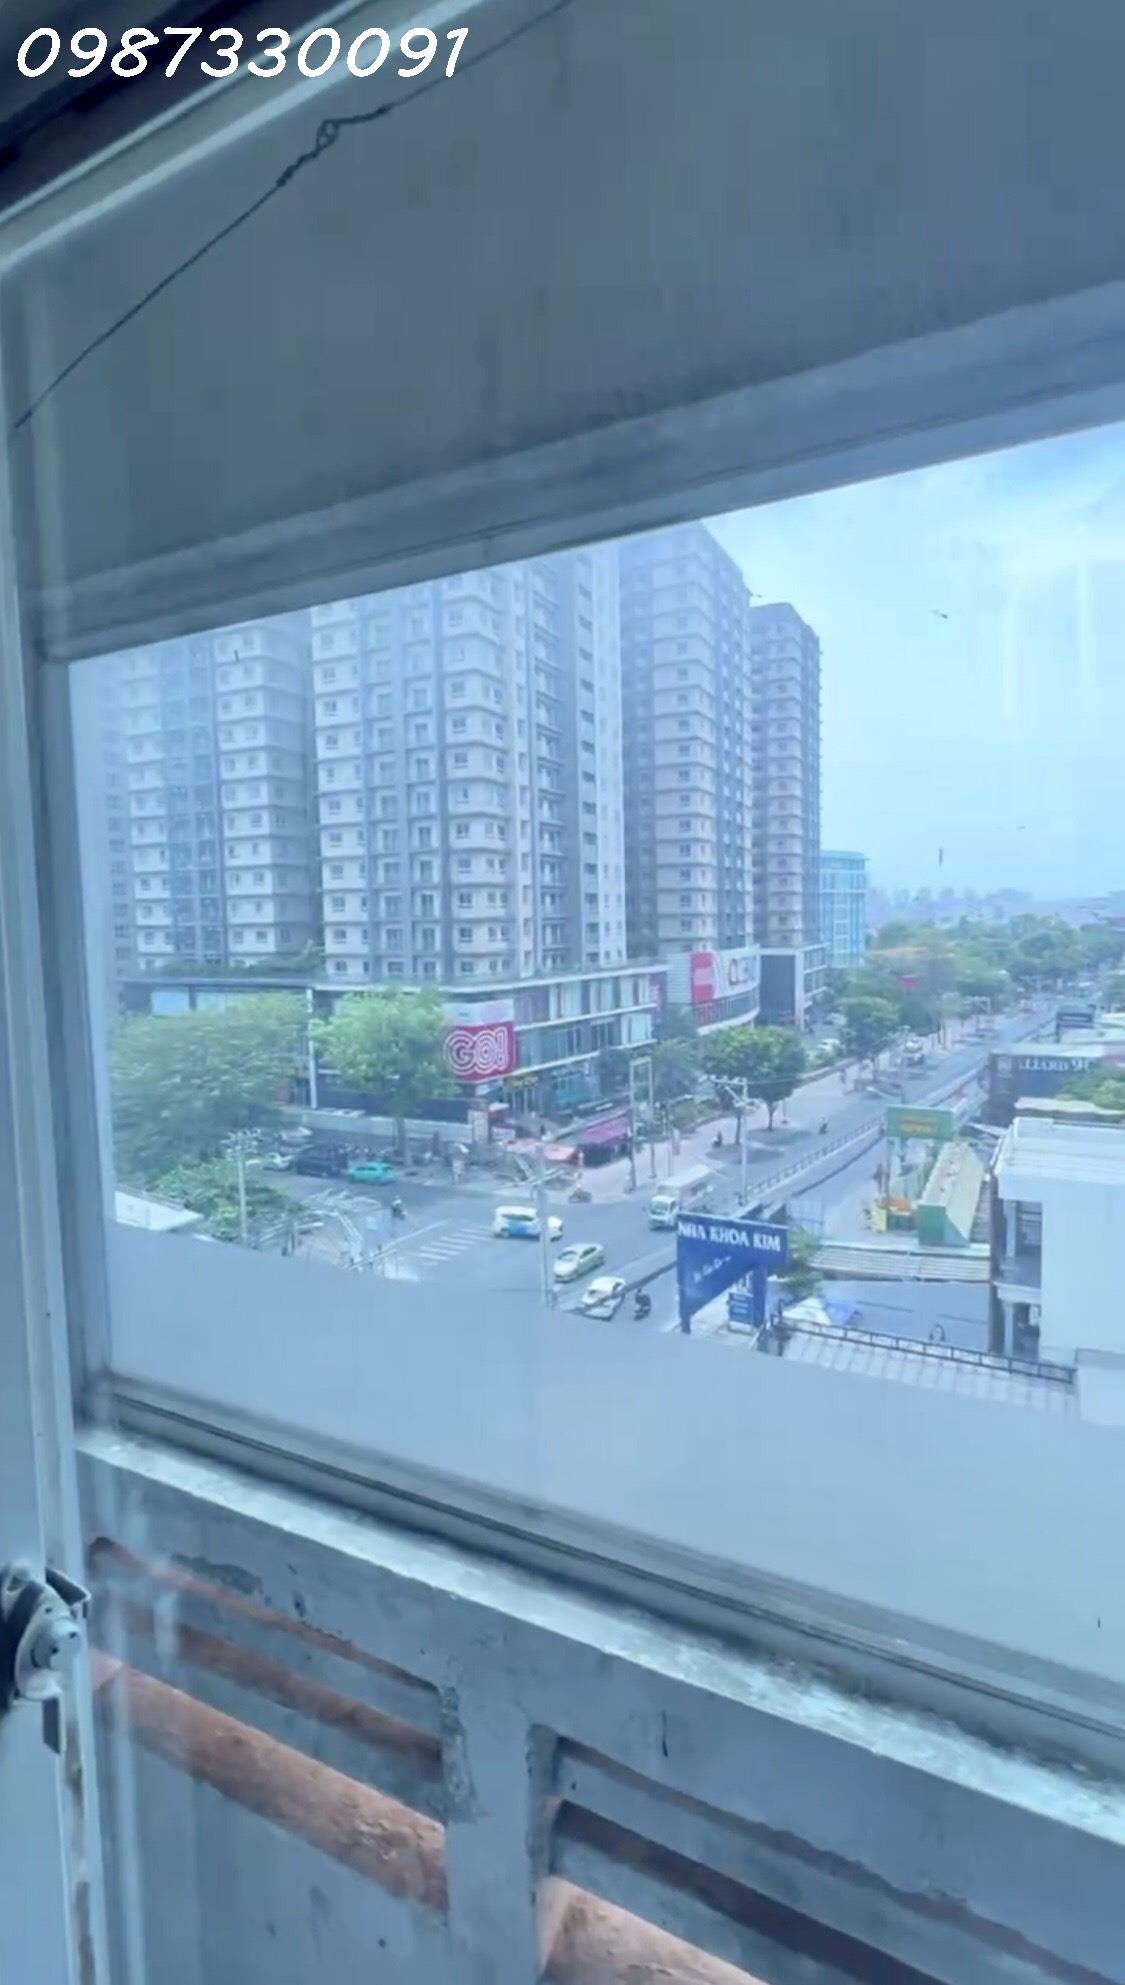 PASS GẤP PHÒNG TẠI tại T&A apartment.58A Nguyễn Thị Thập, Q7, Tp.Hcm